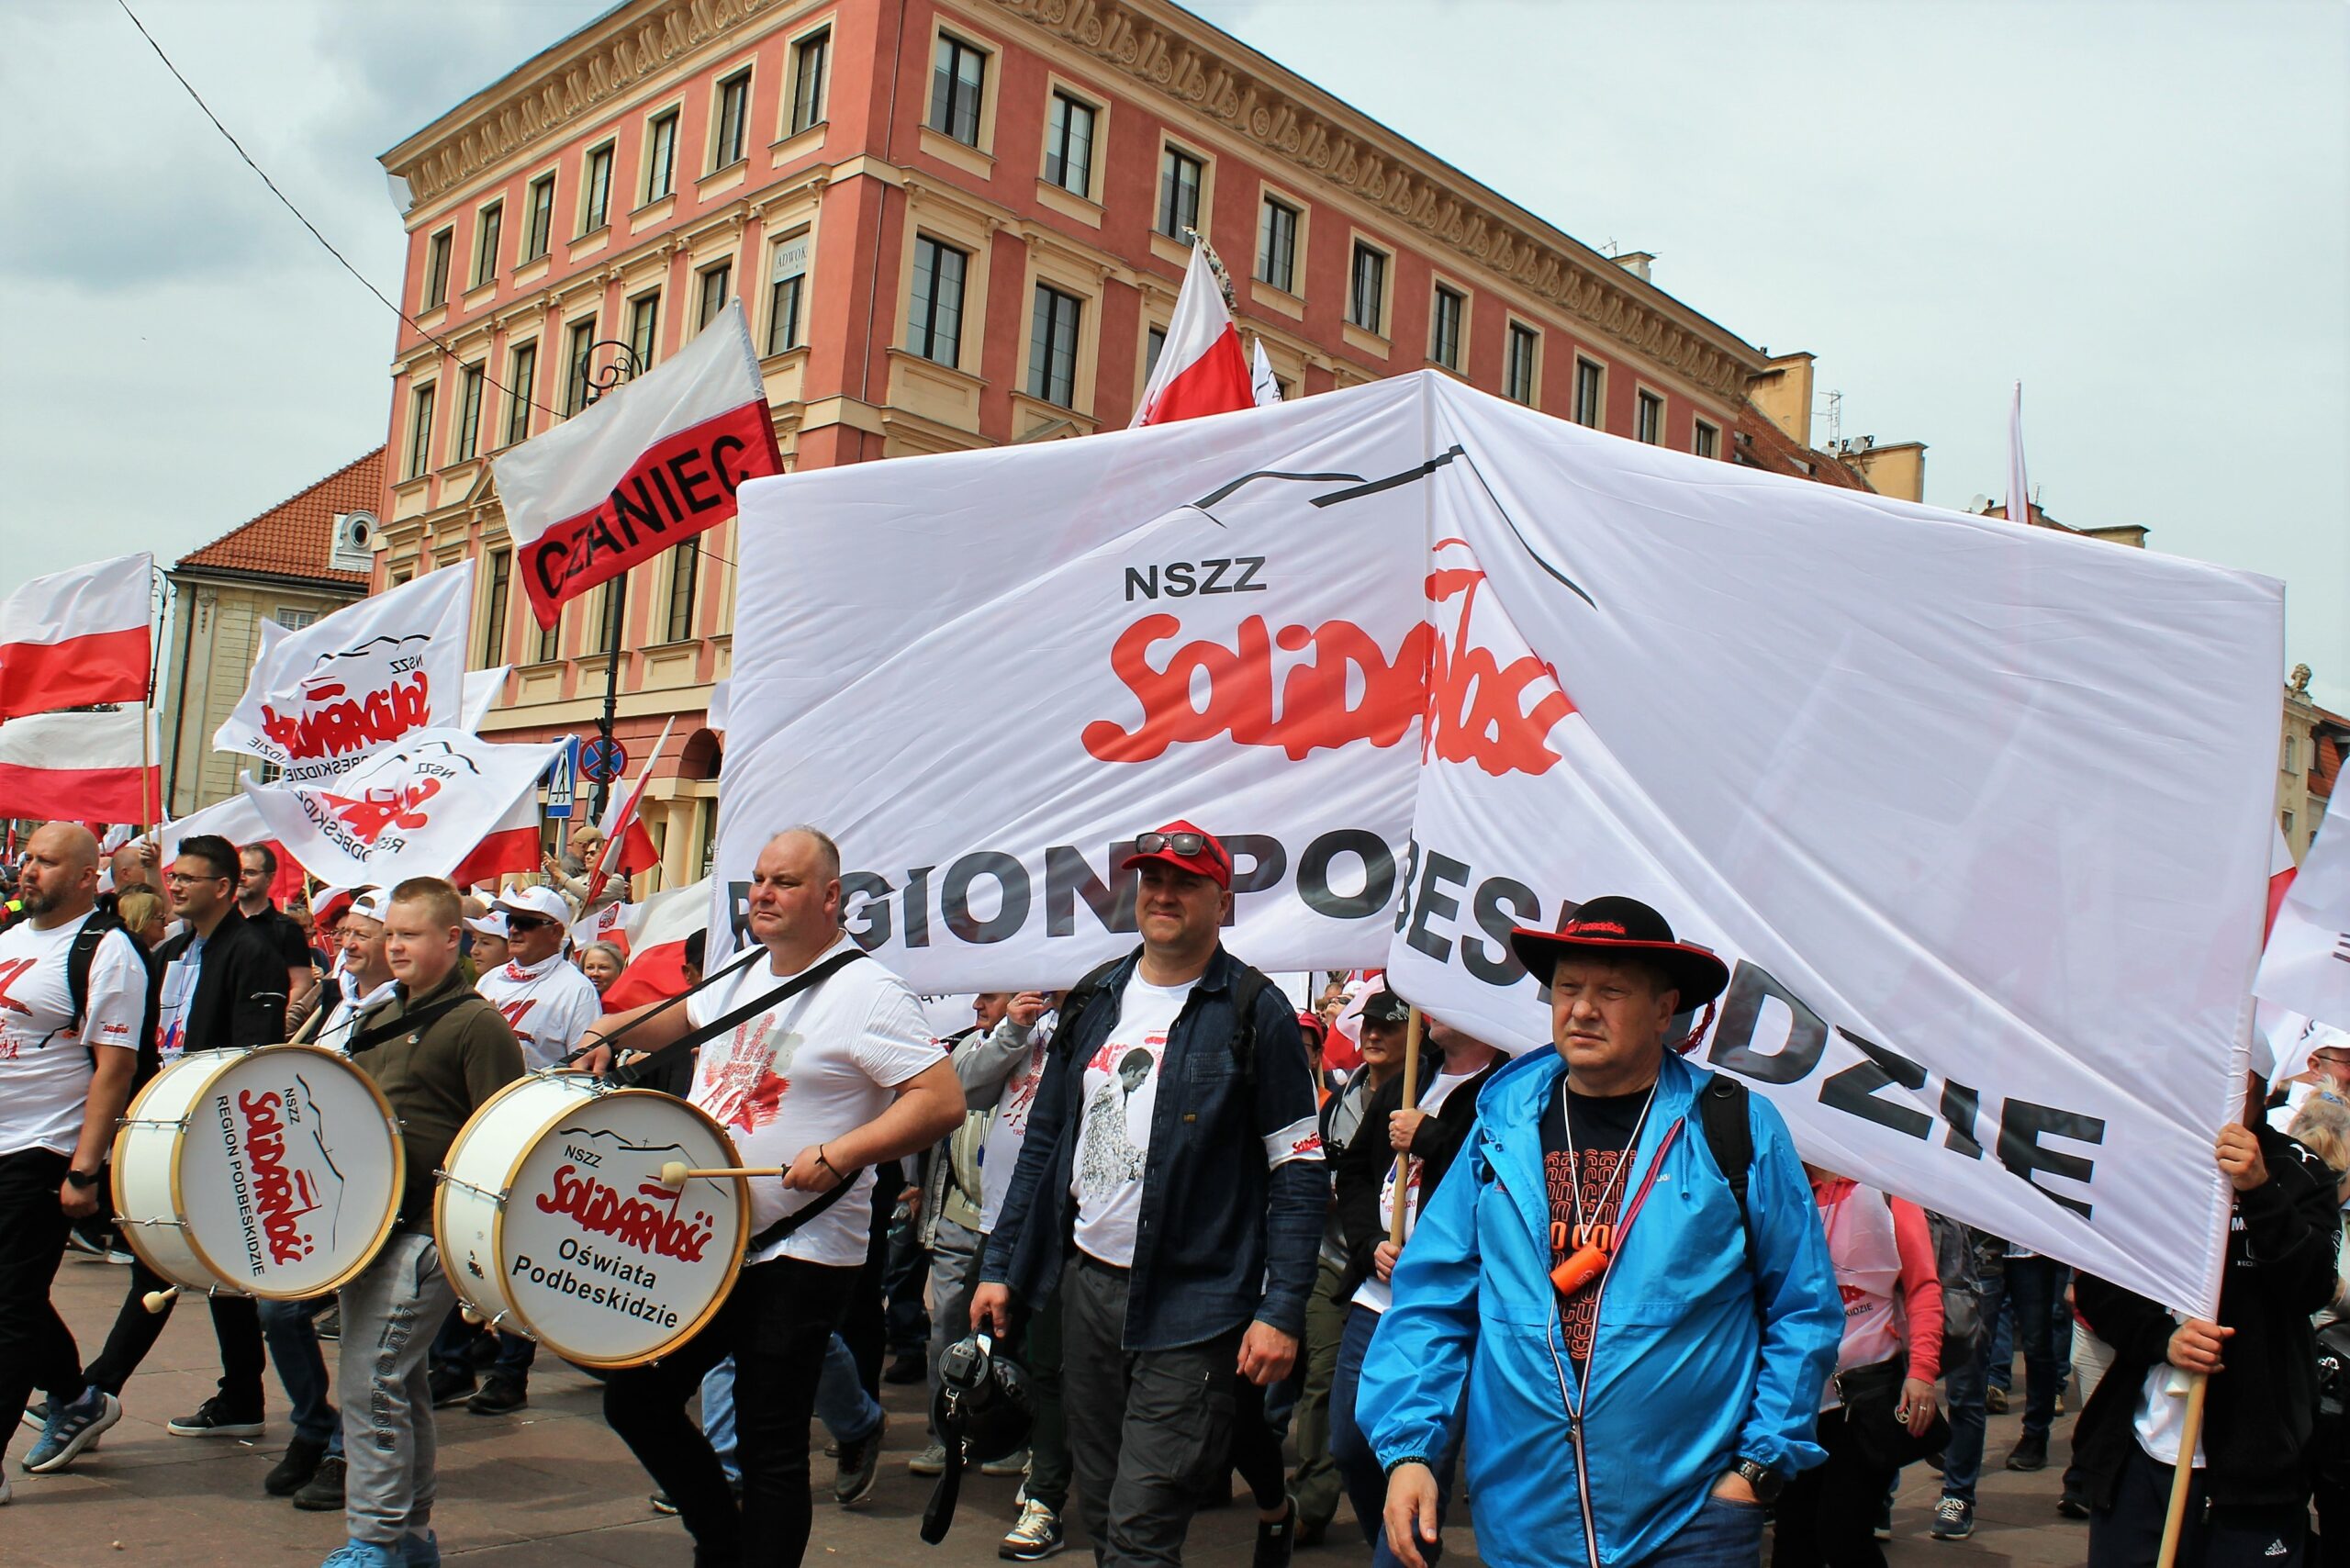 Idzie idzie Podbeskidzie – po ulicach Warszawy. #Stop ZIELONY ŁAD